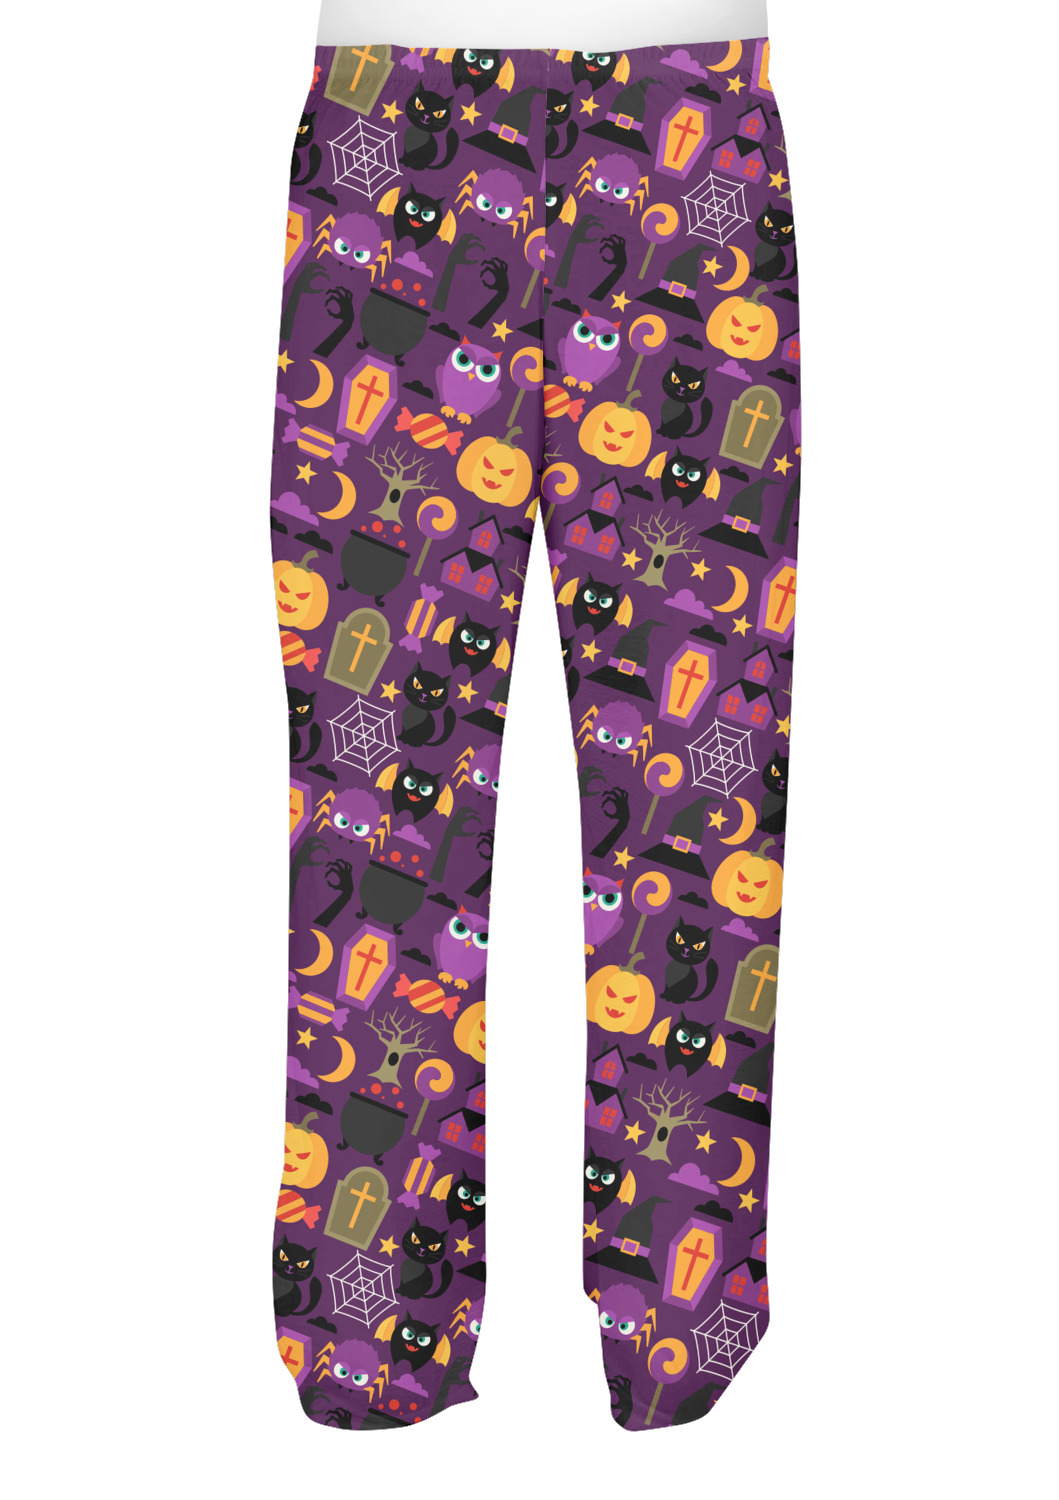 Custom Halloween Mens Pajama Pants - XL | YouCustomizeIt